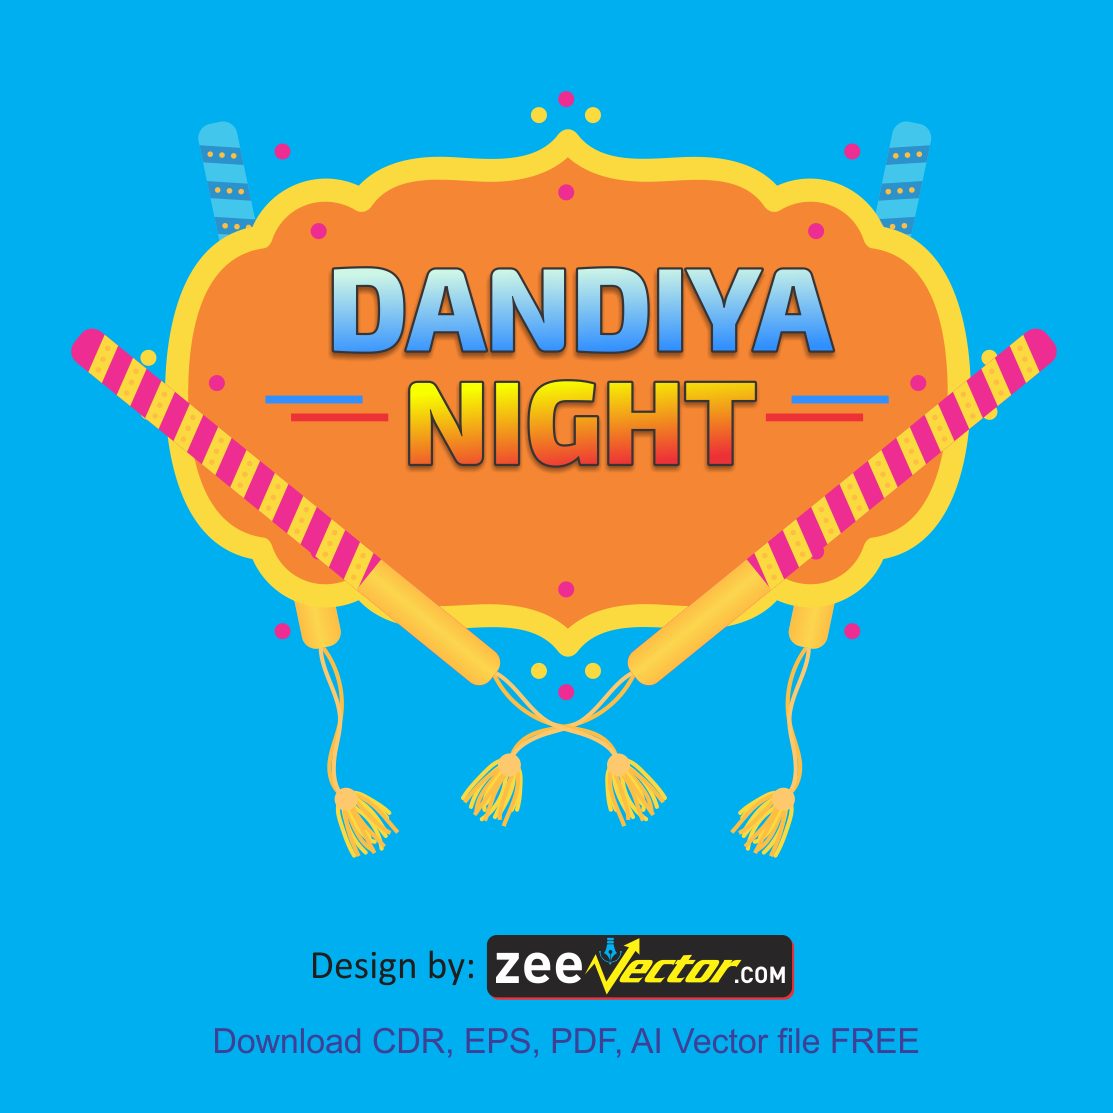 Dandiya-Night-logo-vector